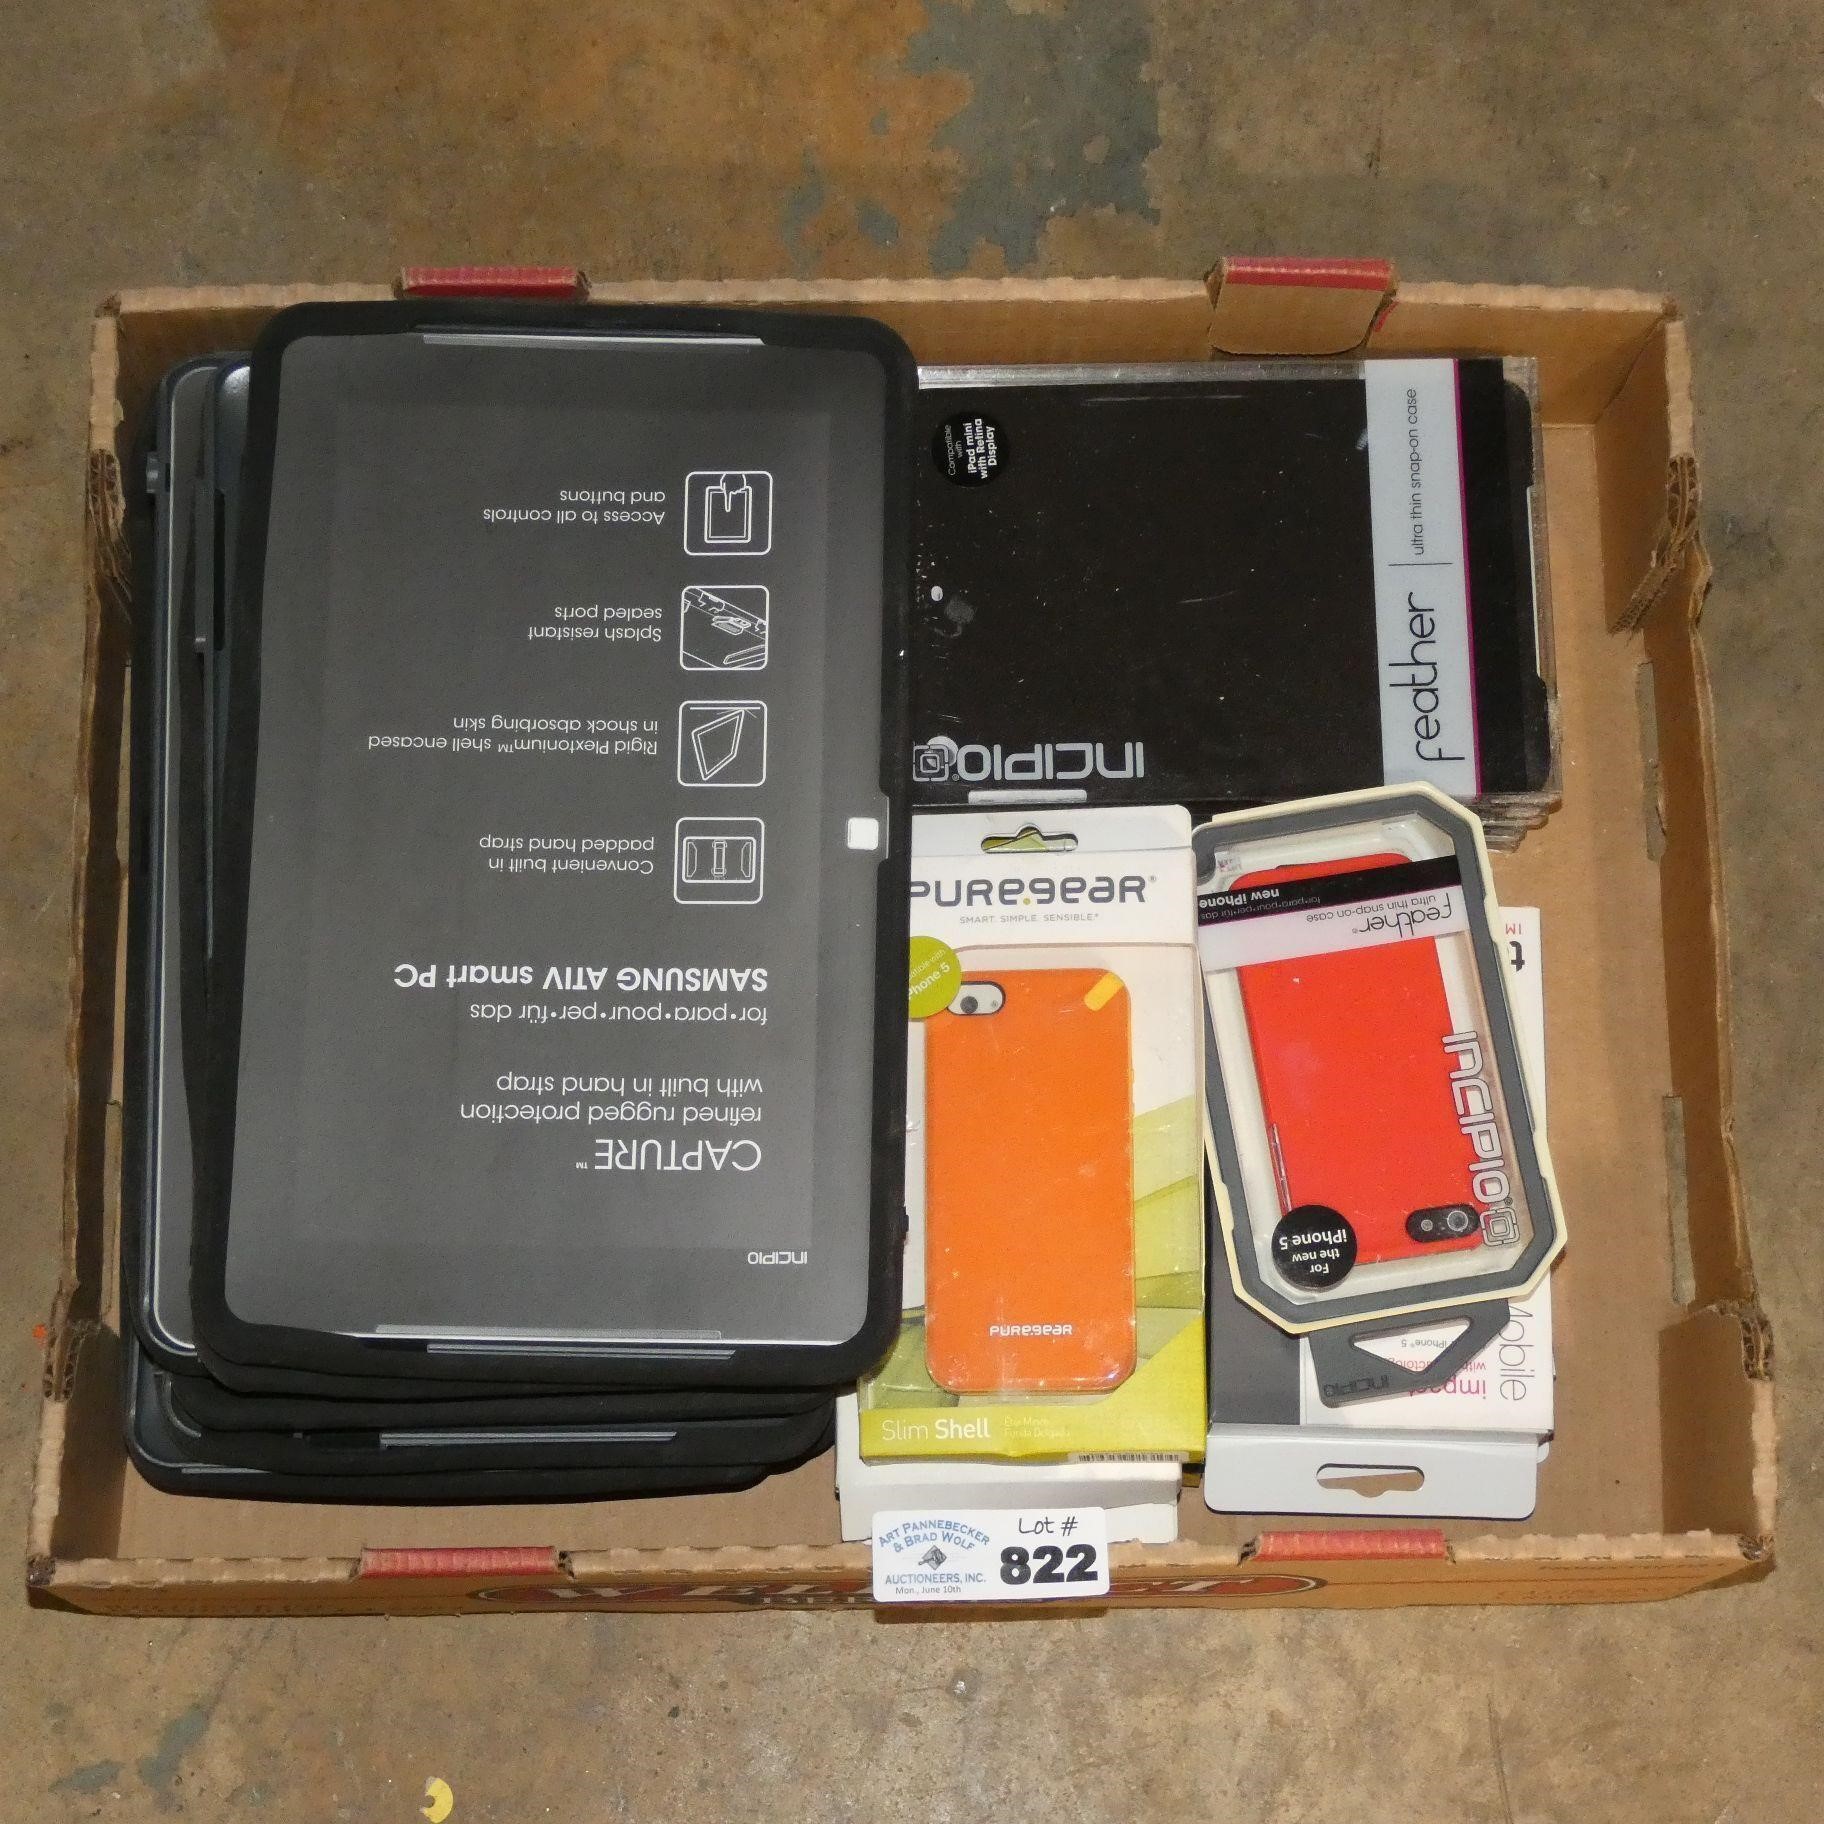 Iphone Cases - Ipad Mini Case - Samsung ATIV